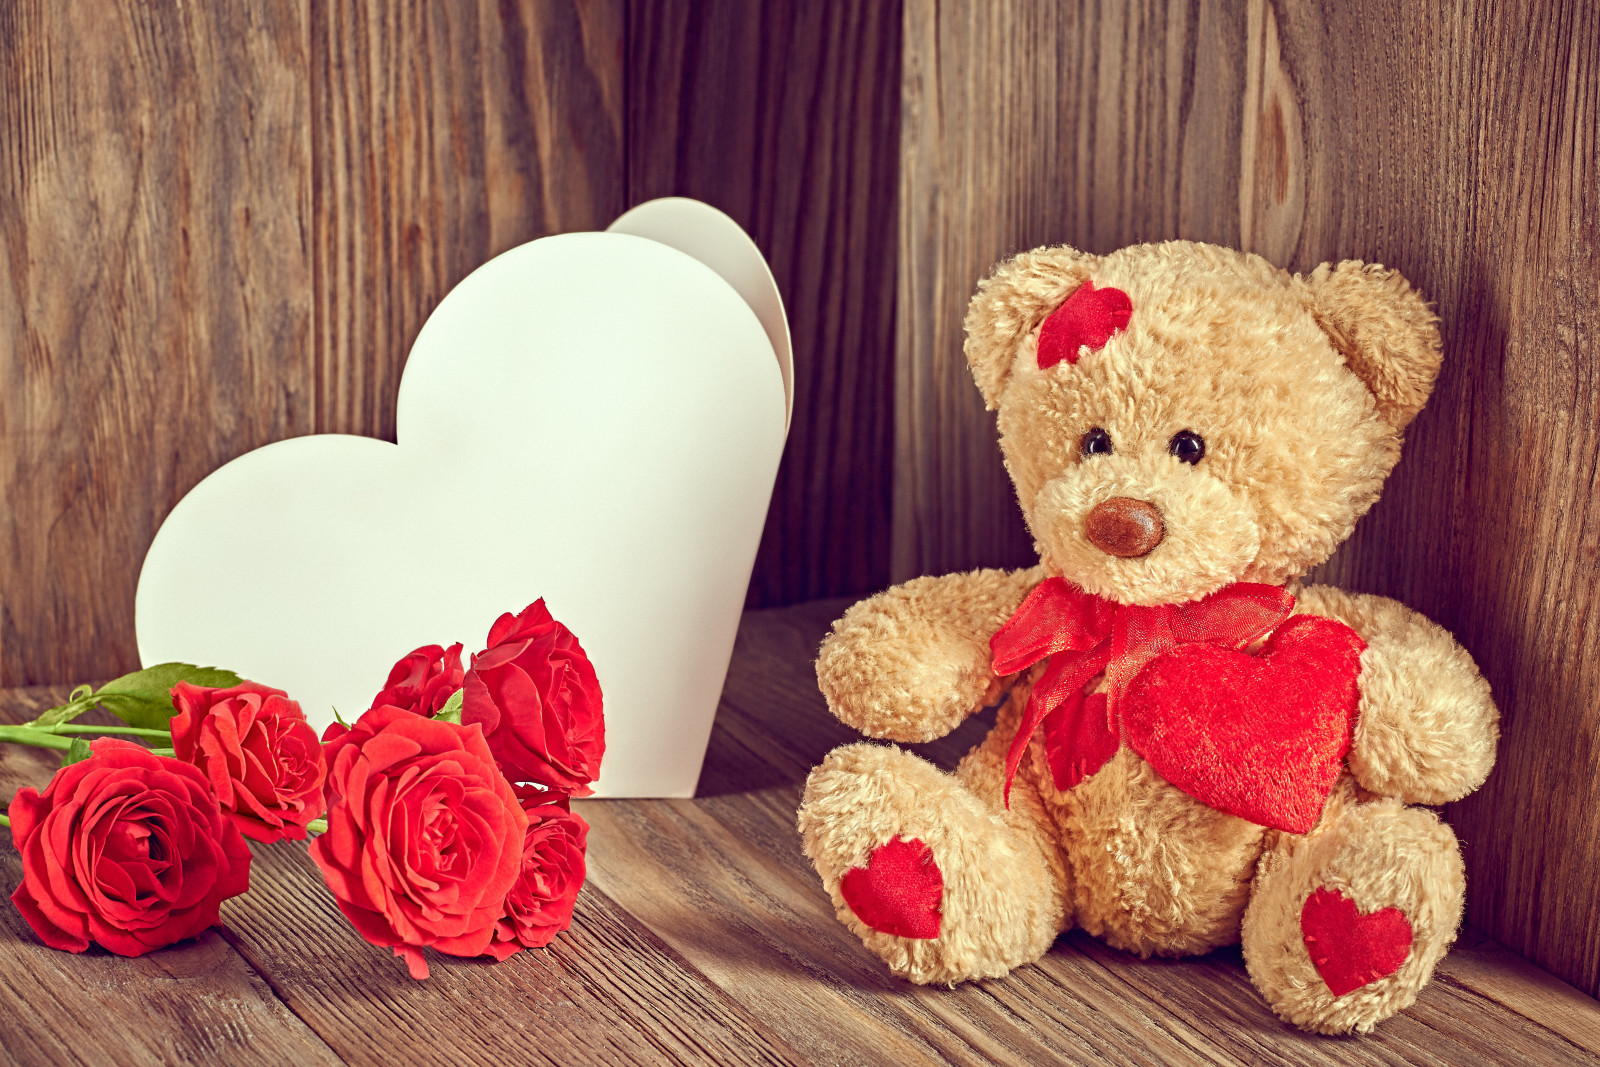 爱, 浪漫, 情人节, 玫瑰花, 熊, 花卉, 心, 泰迪熊